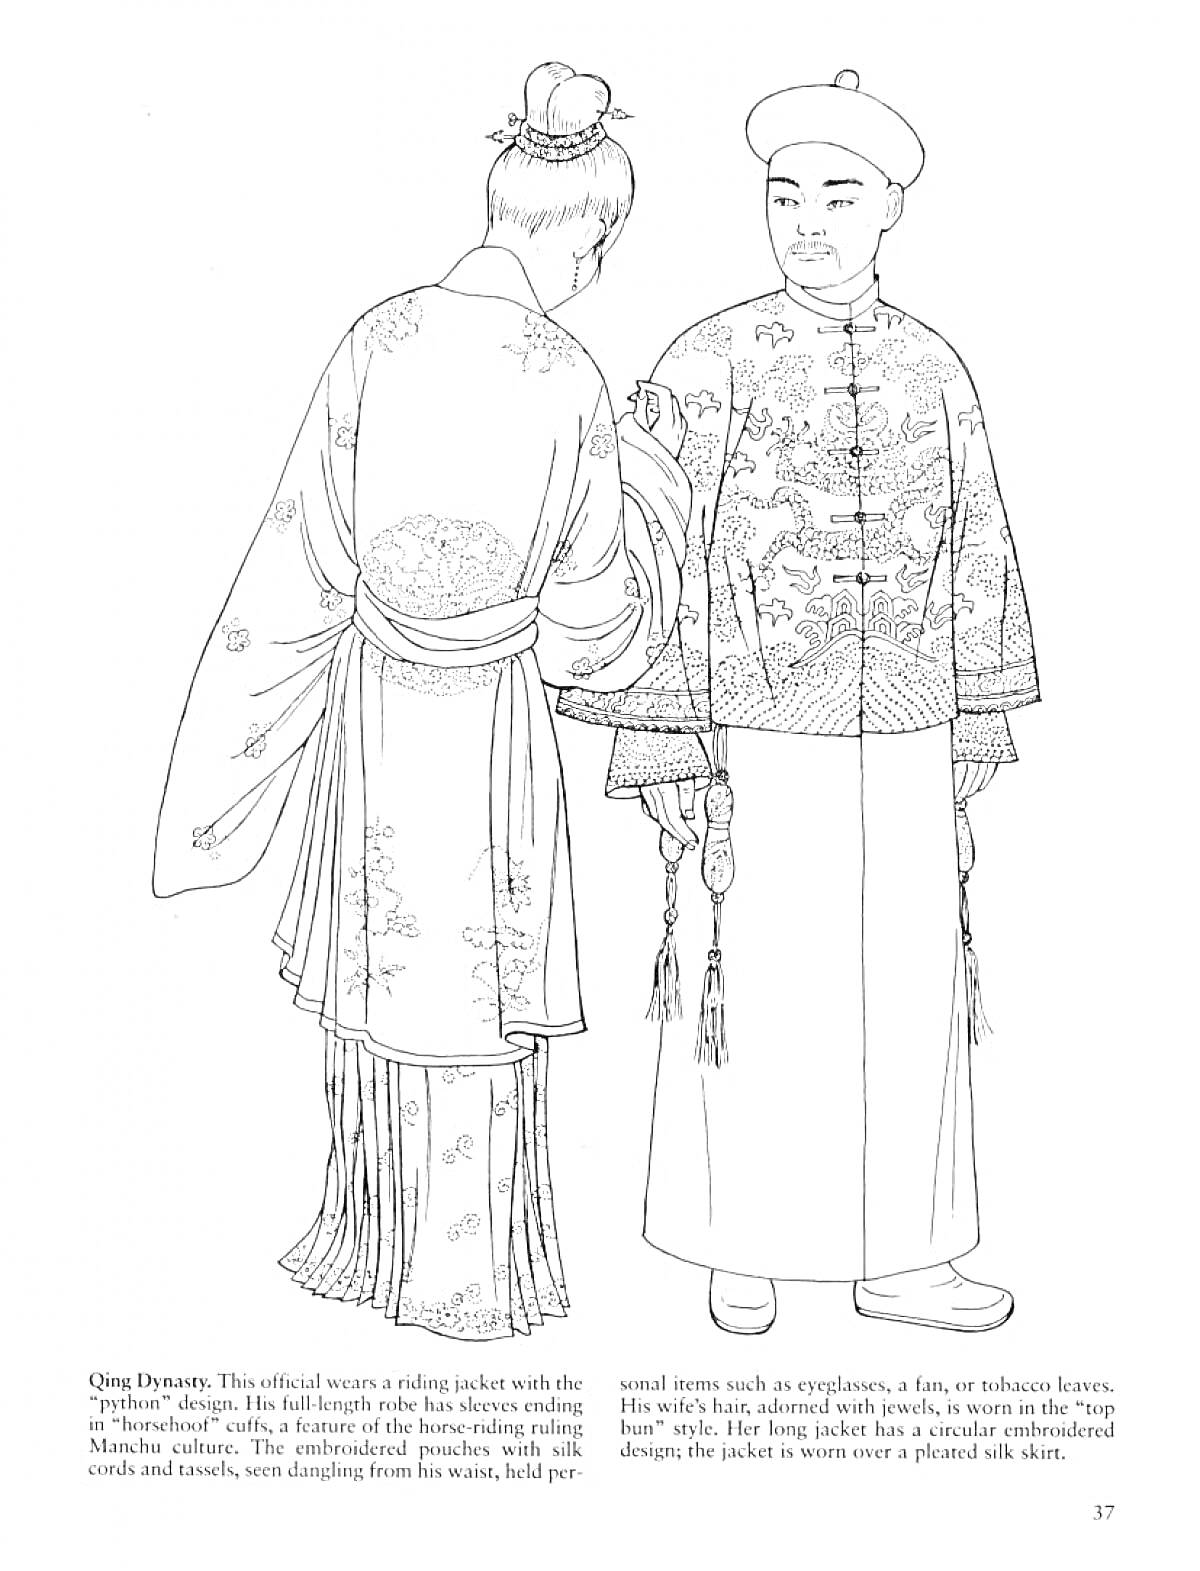 Раскраска Традиционная китайская одежда династии Цин - женский халат с поясом и длинной юбкой, мужское длинное одеяние с вышивкой